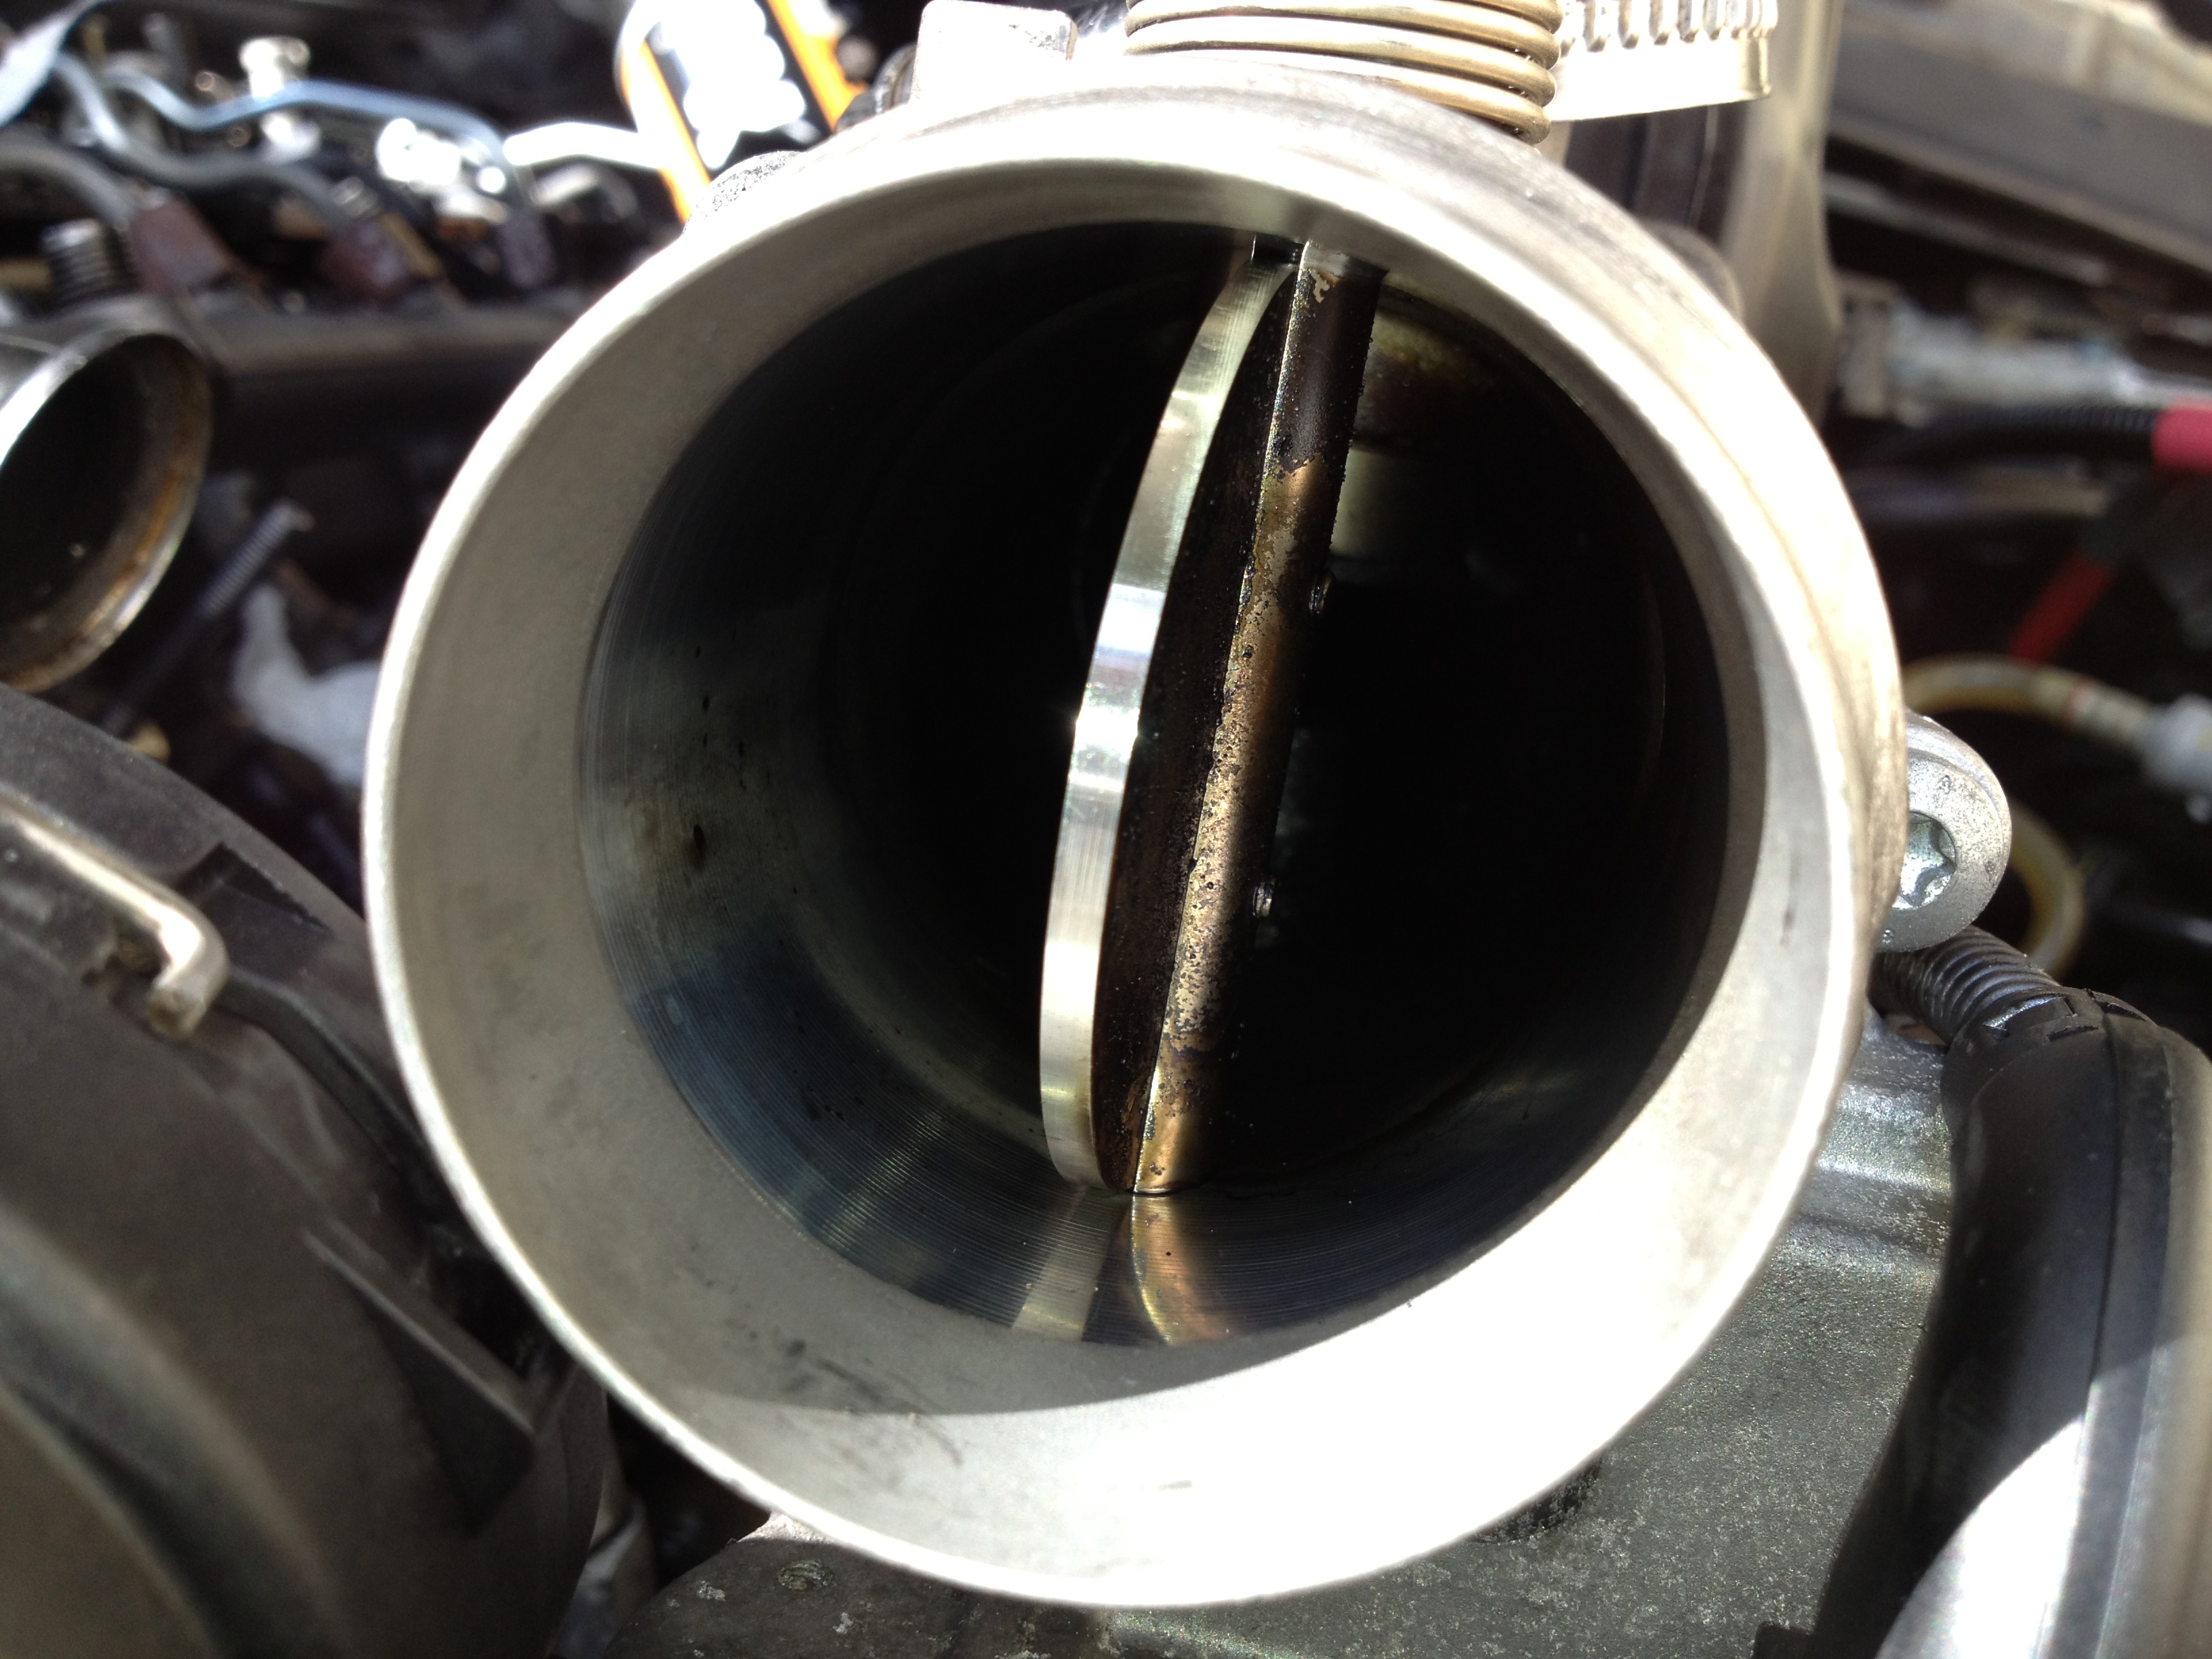 Bmw 535d fuel filter change #3